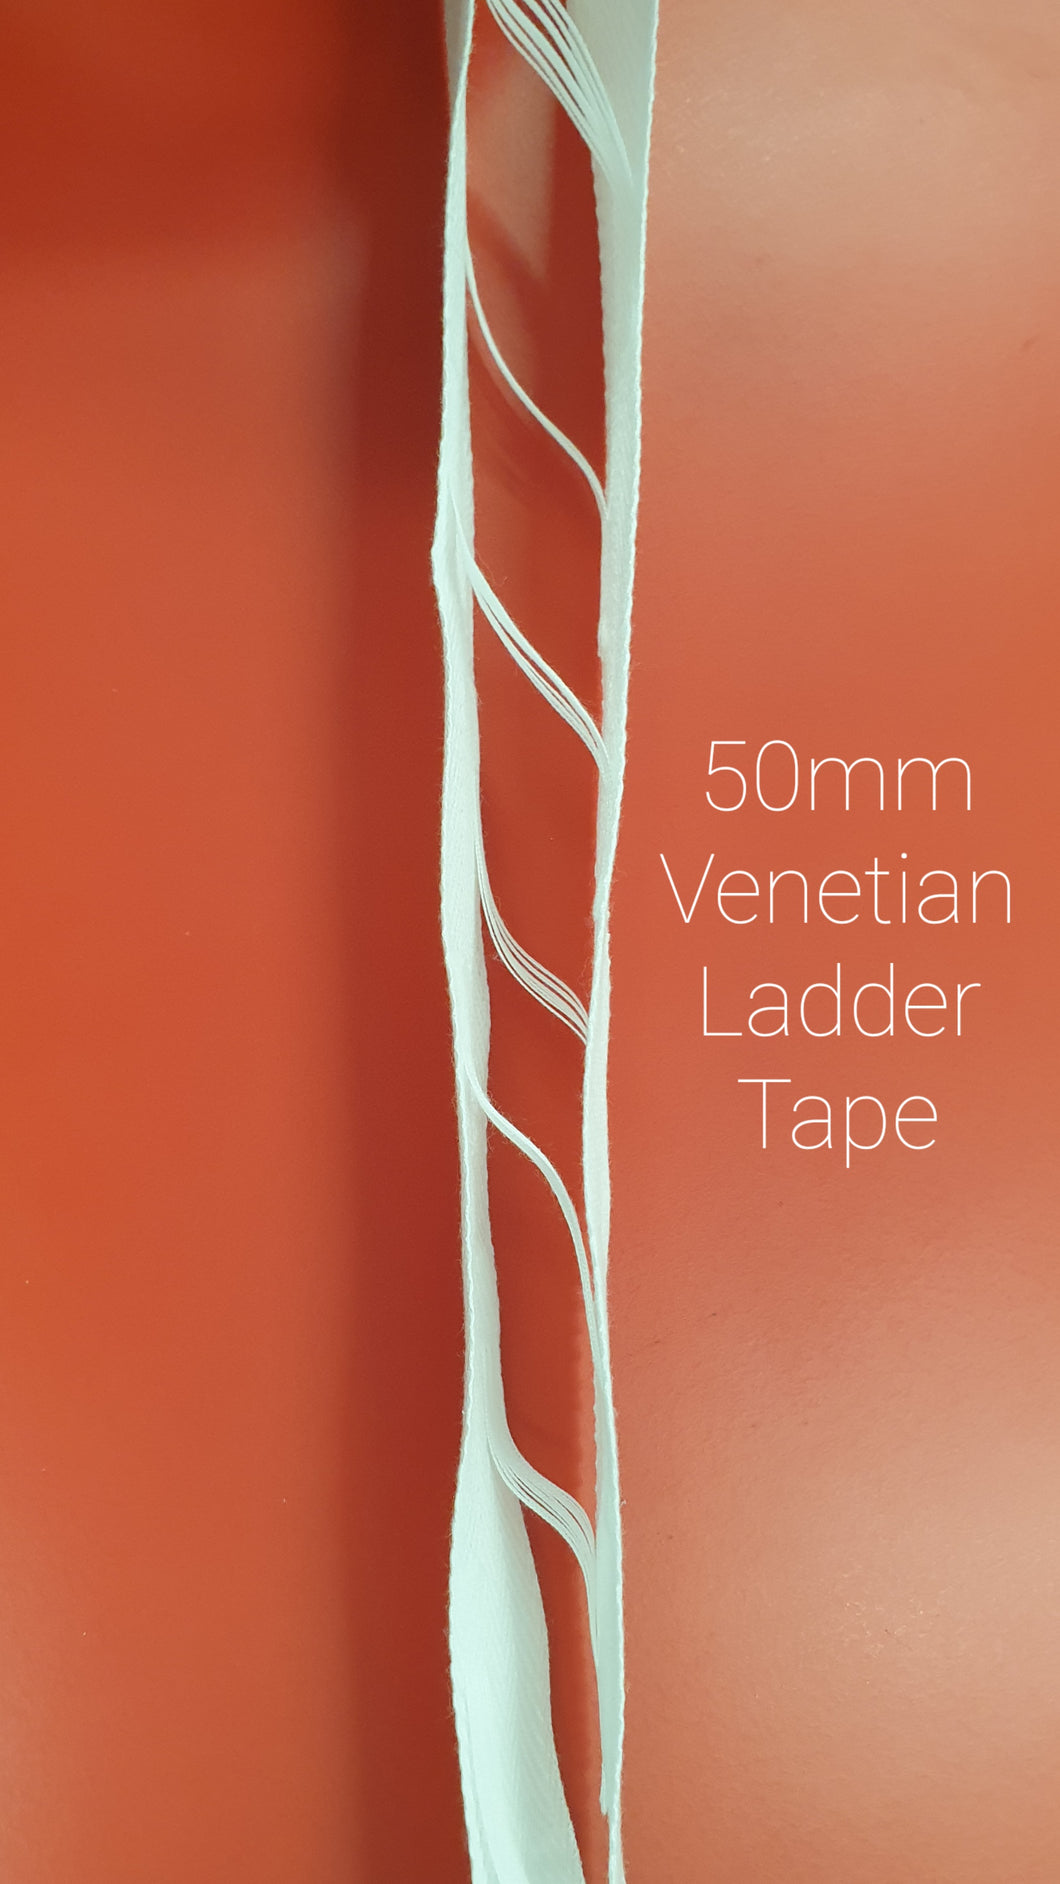 50mm Venetian Ladder Tape